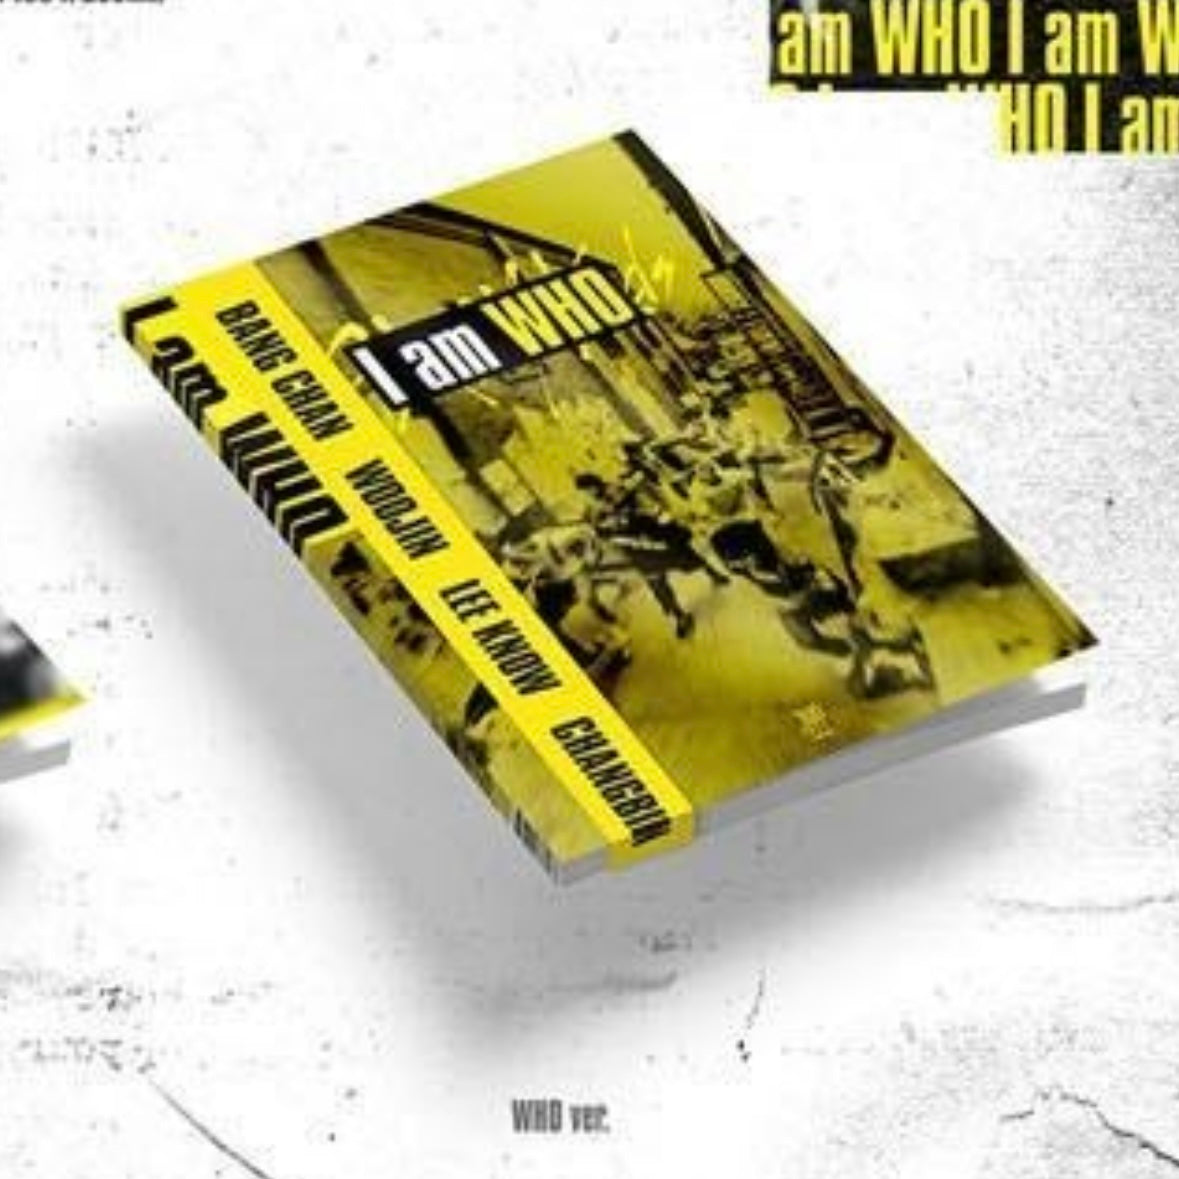 Stray Kids - 2nd Mini-Album 'I am WHO'